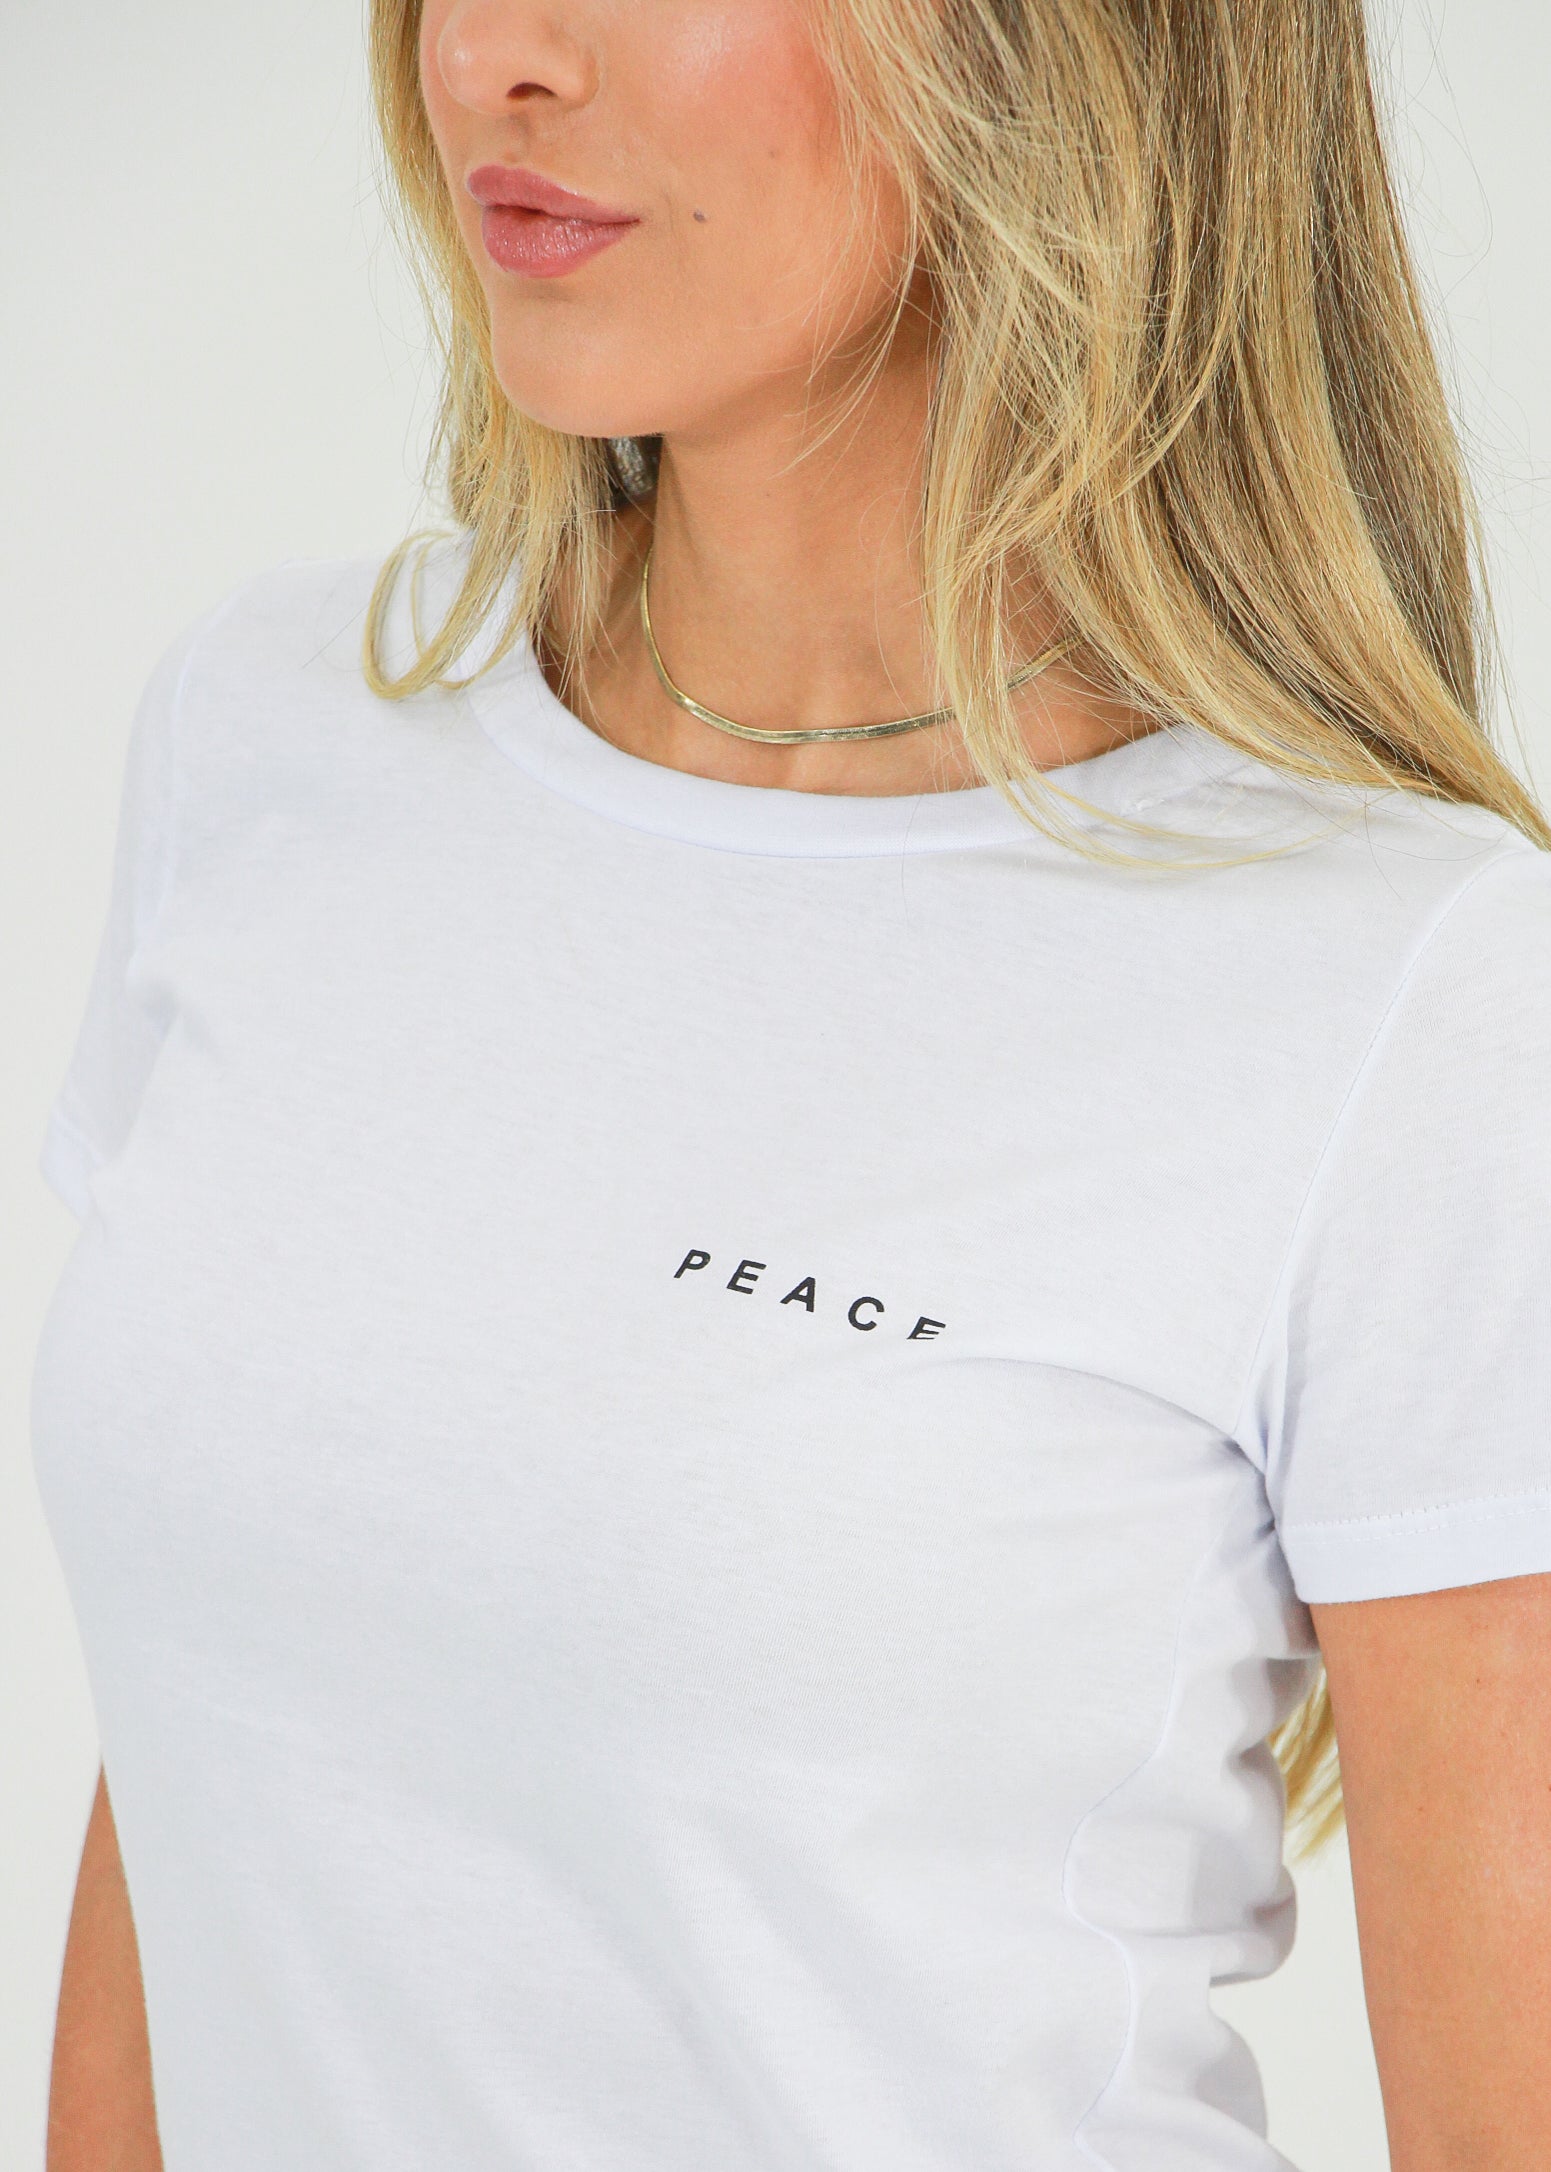 Camiseta Peace - Branca